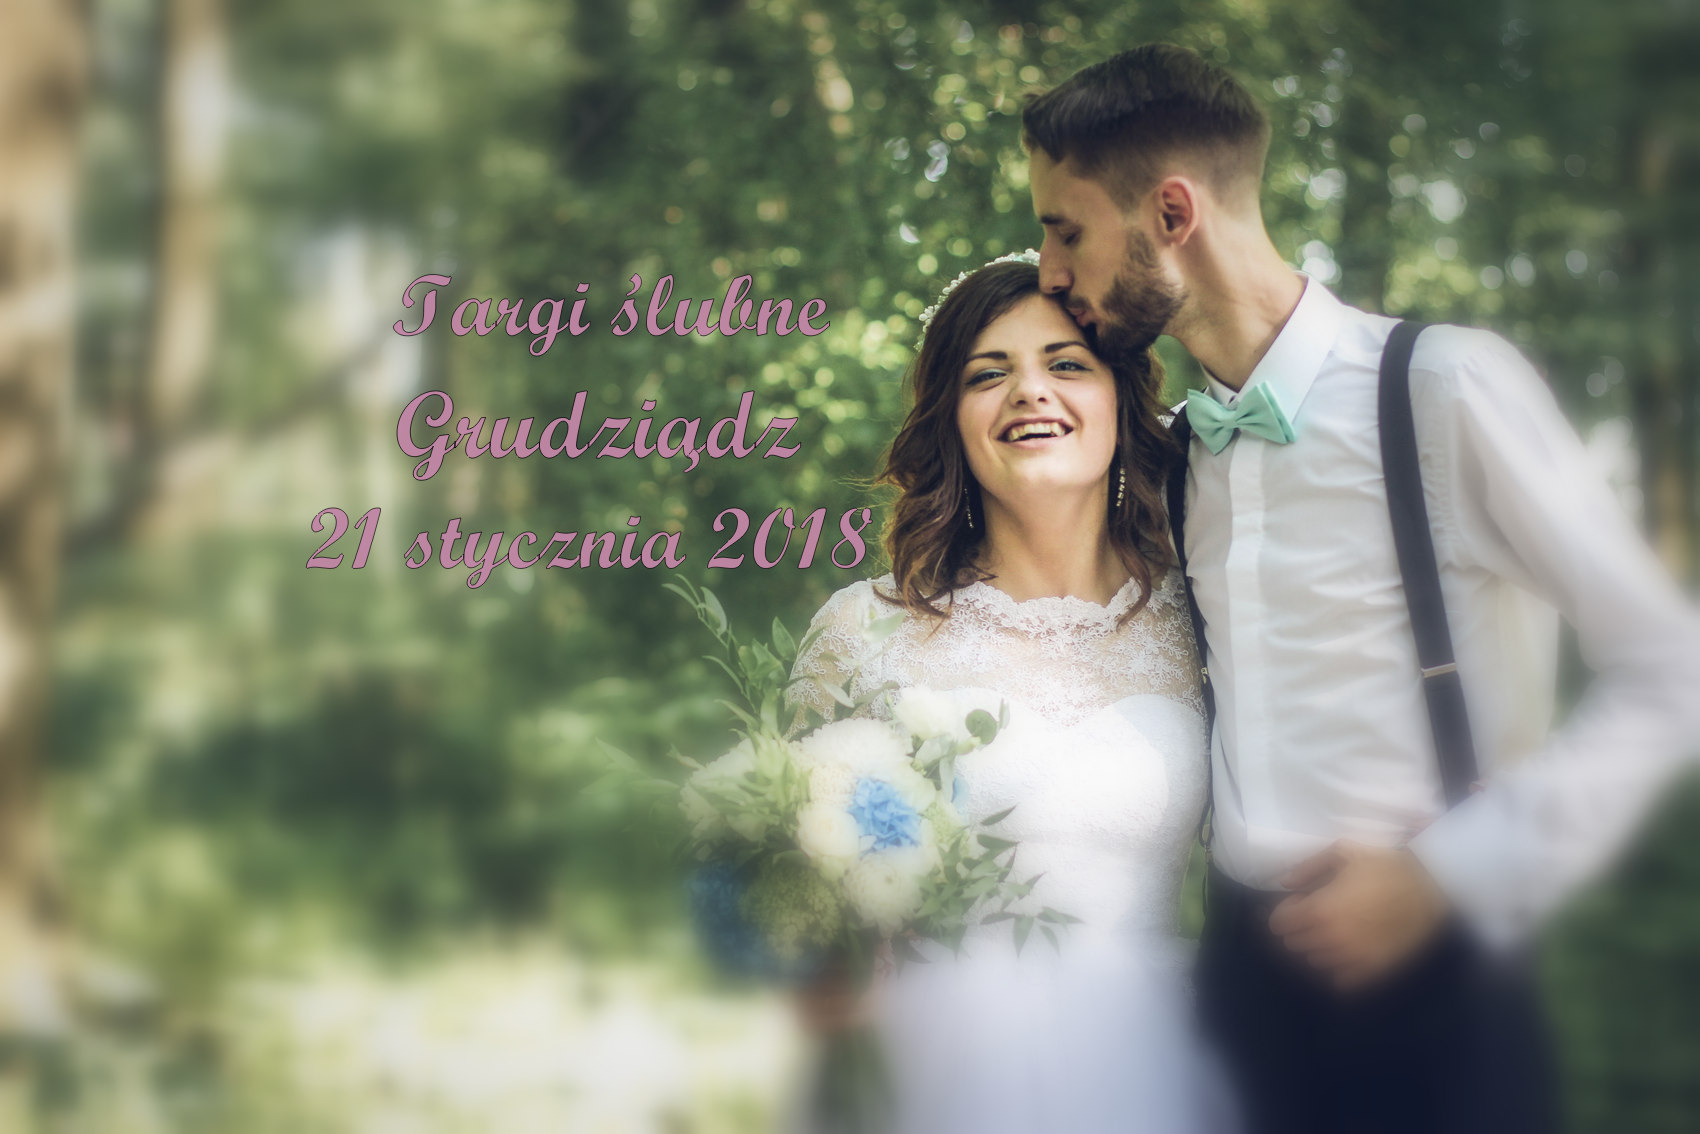 IV Targi Ślubne w Grudziądzu - 21 stycznia 2018